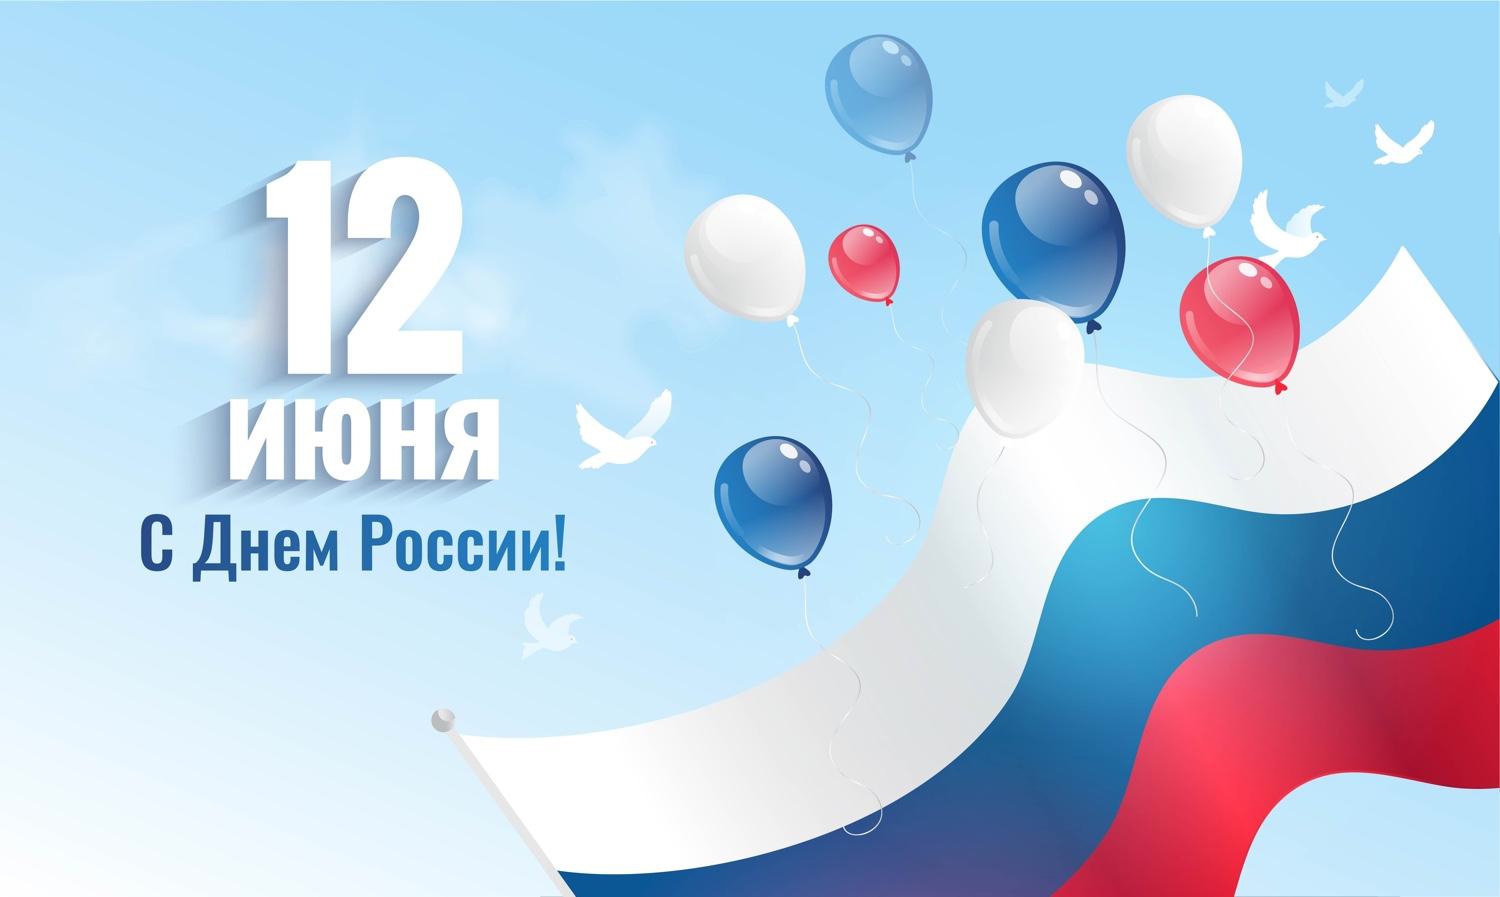 12 июня в нашей стране отмечается День России. 